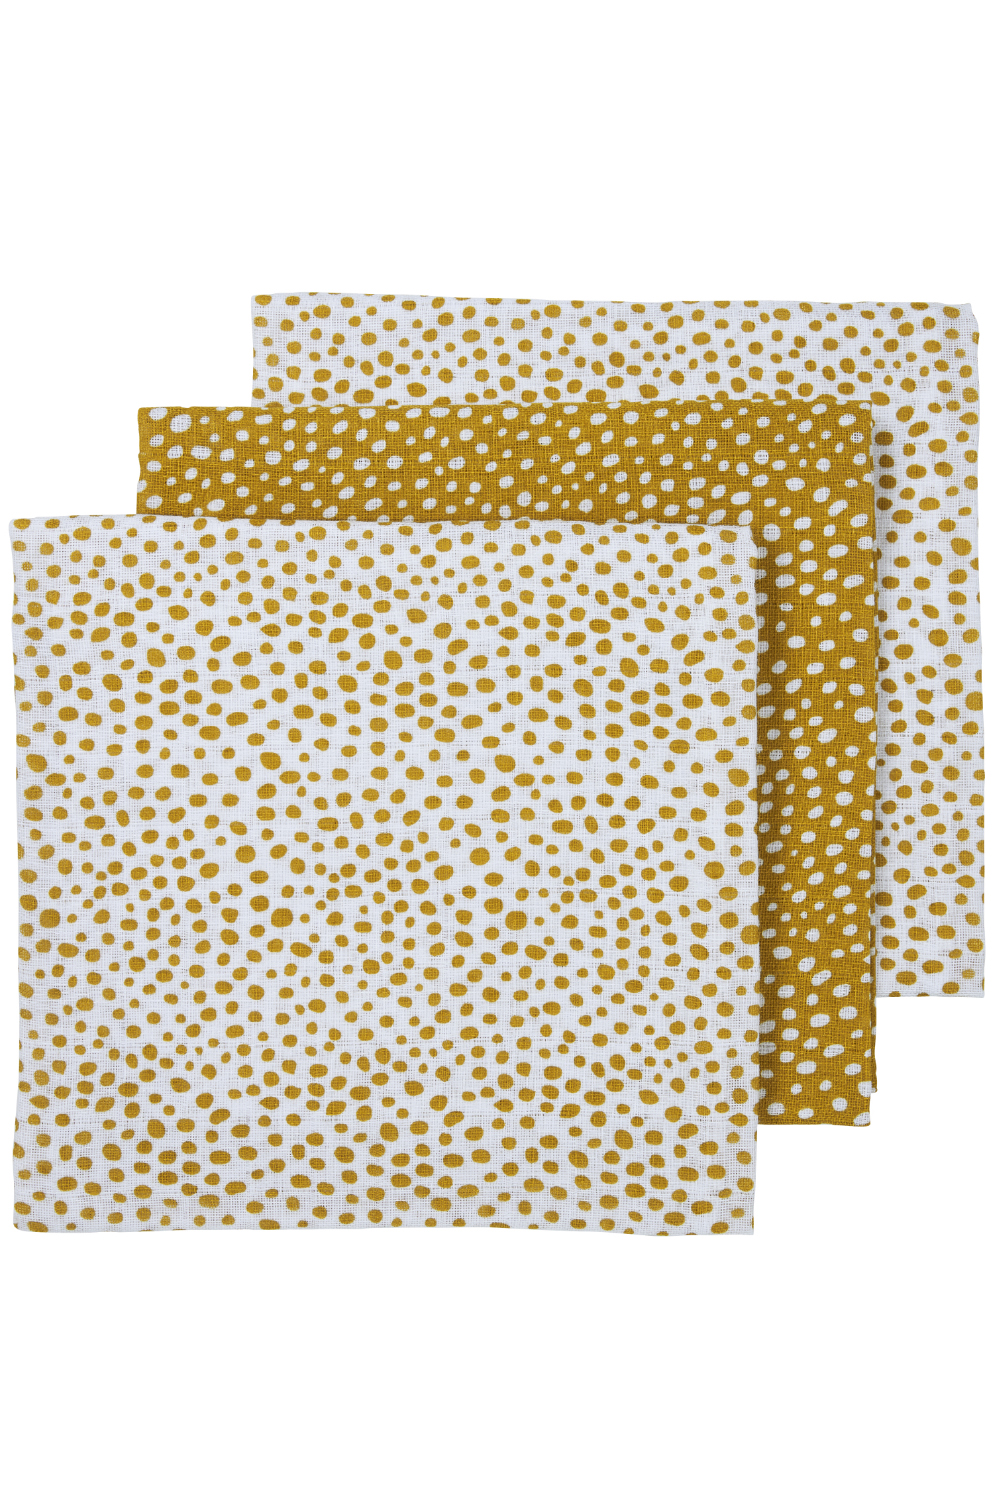 desinfecteren met de klok mee een vergoeding Hydrofiel Luiers 3-pack Cheetah - Honey Gold - 70x70cm | Luier (70 x 70 cm)  | Honey gold | 452037